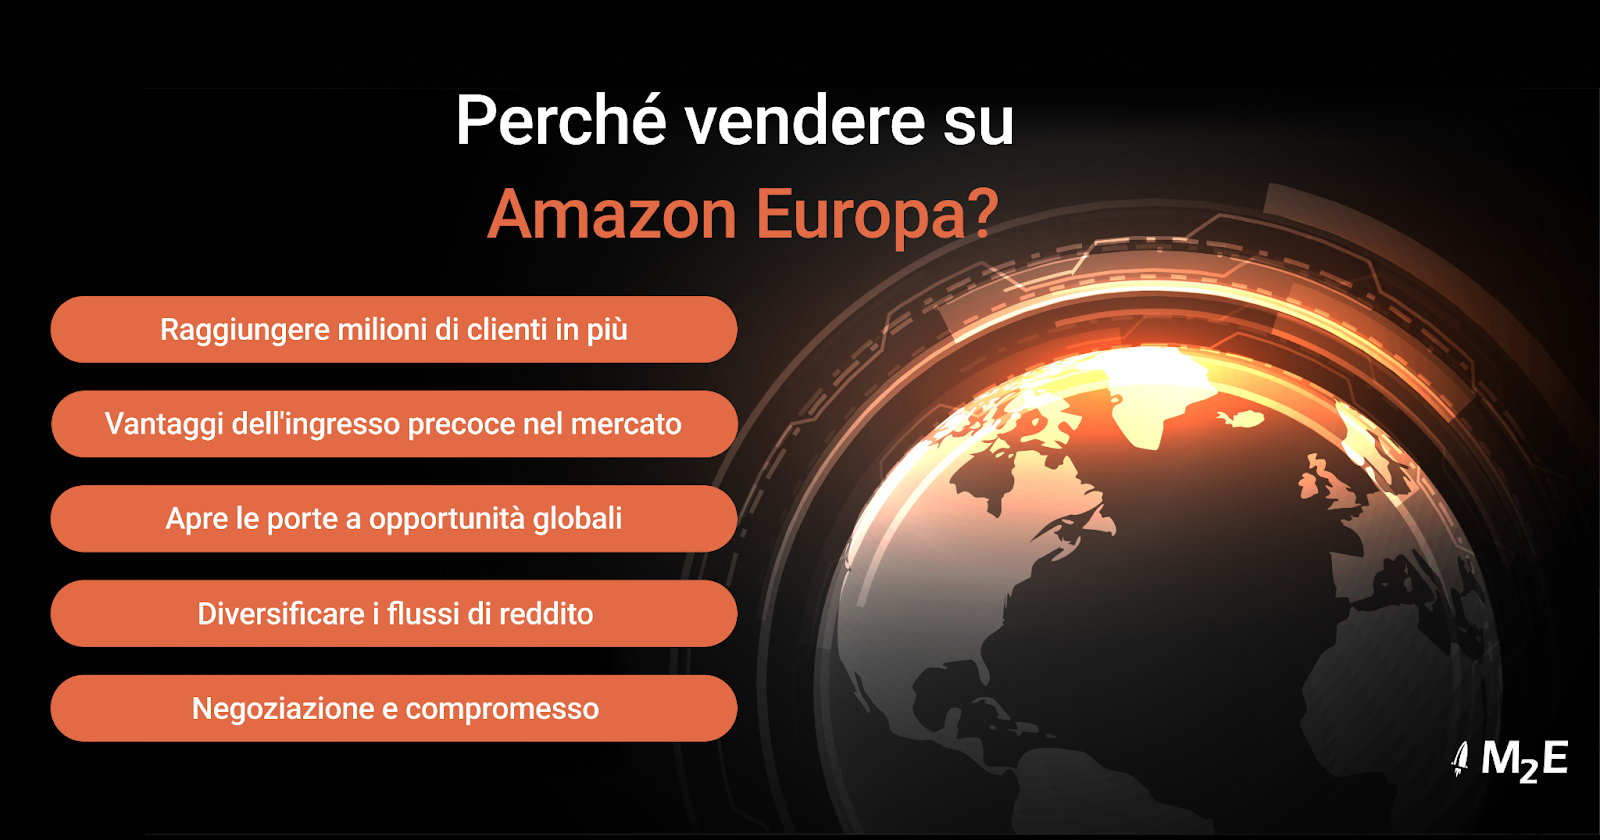 Perché vendere su Amazon Europa?